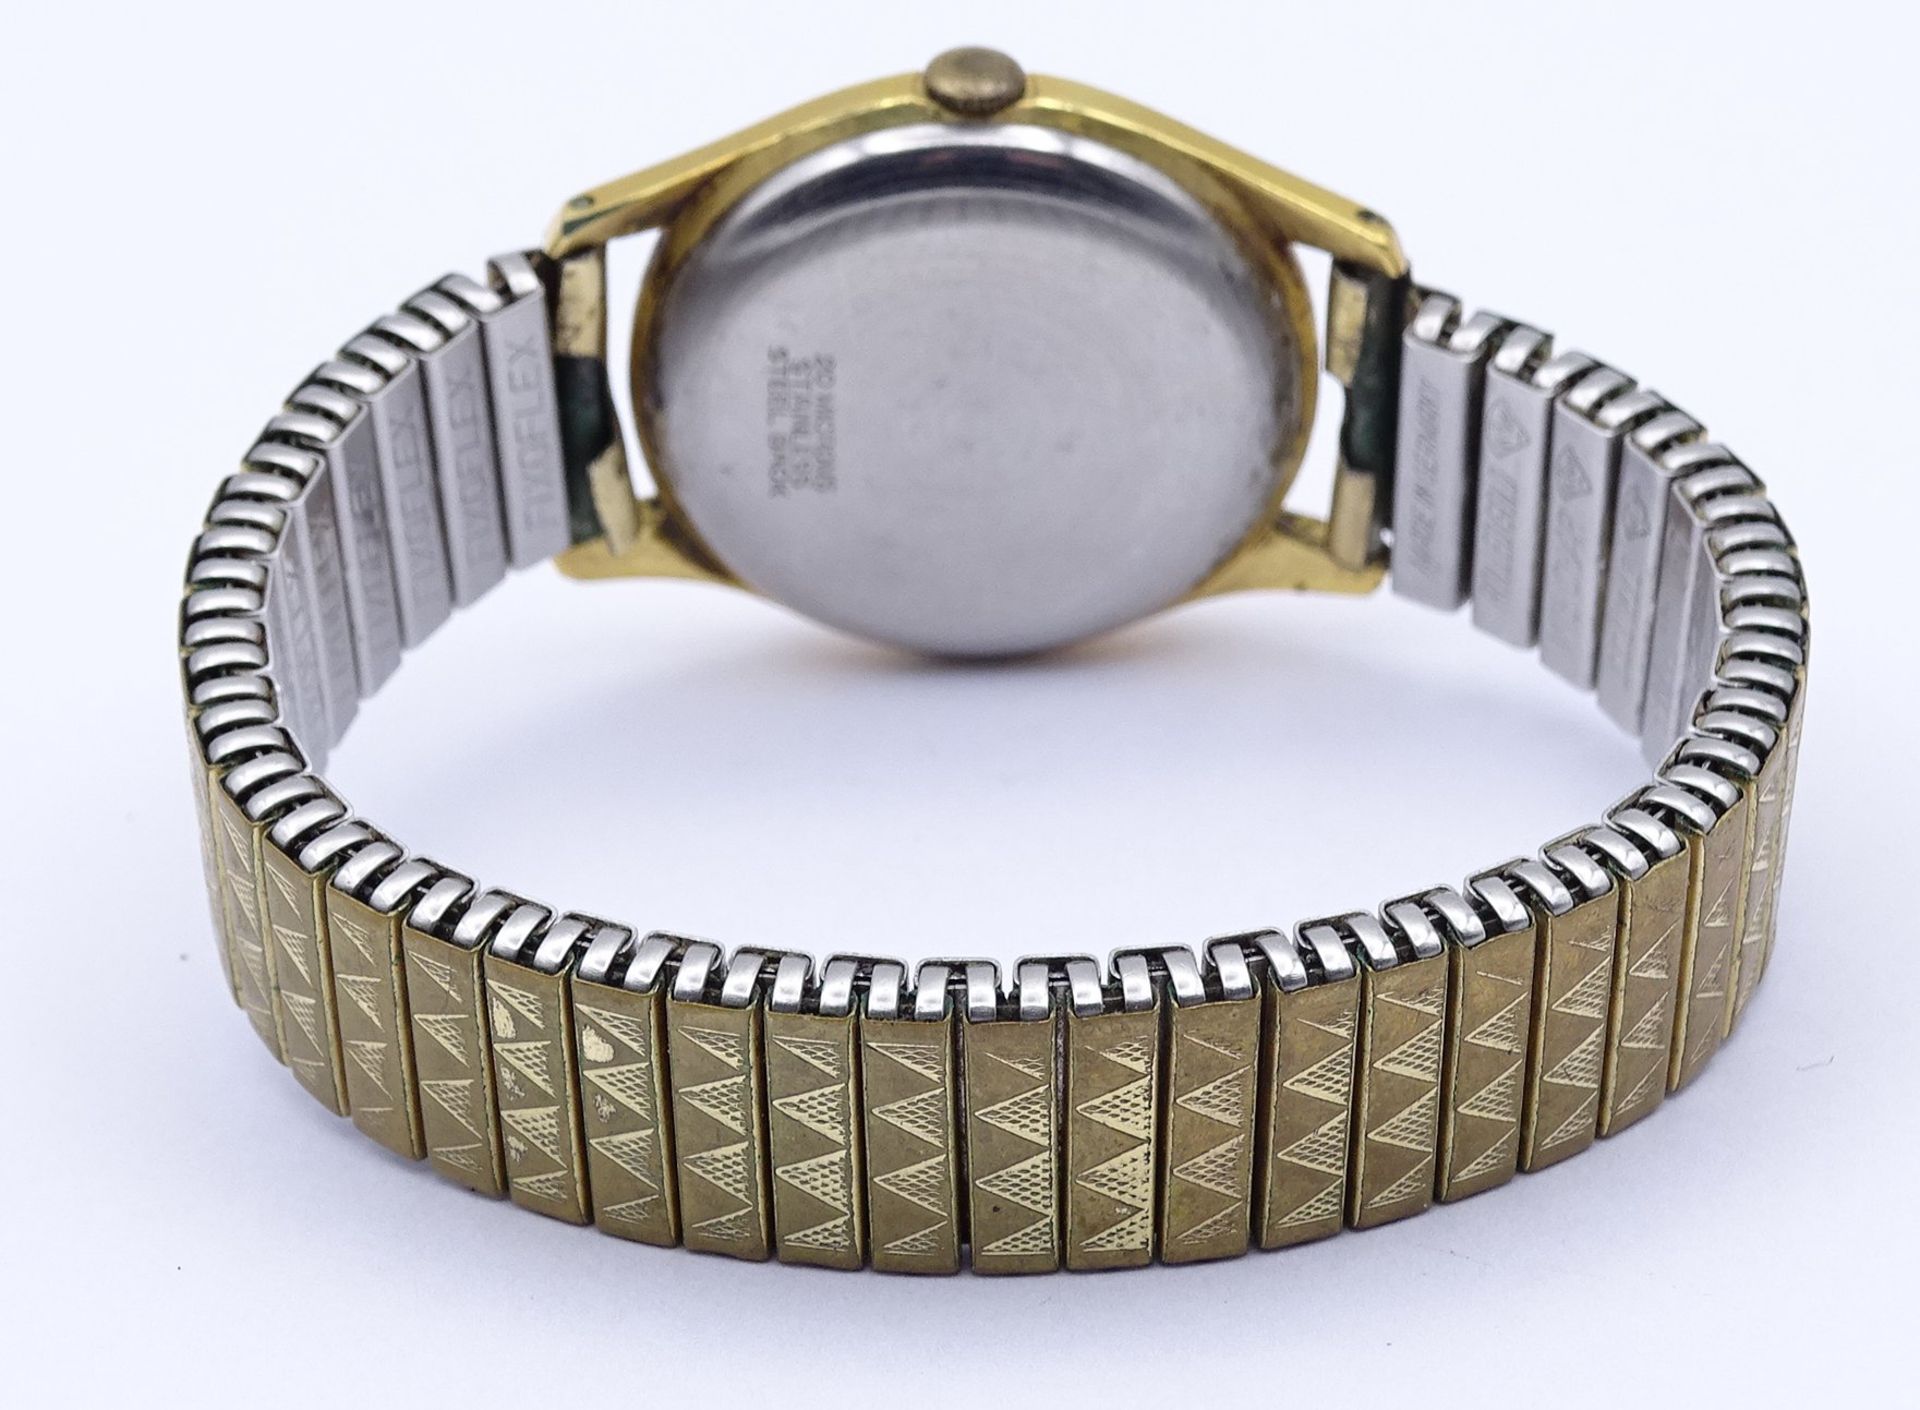 Armbanduhr Bifora Top, mechanisch, Werk läuft kurz an, D. 31mm, Alters- und Gebrauchsspuren - Image 3 of 4